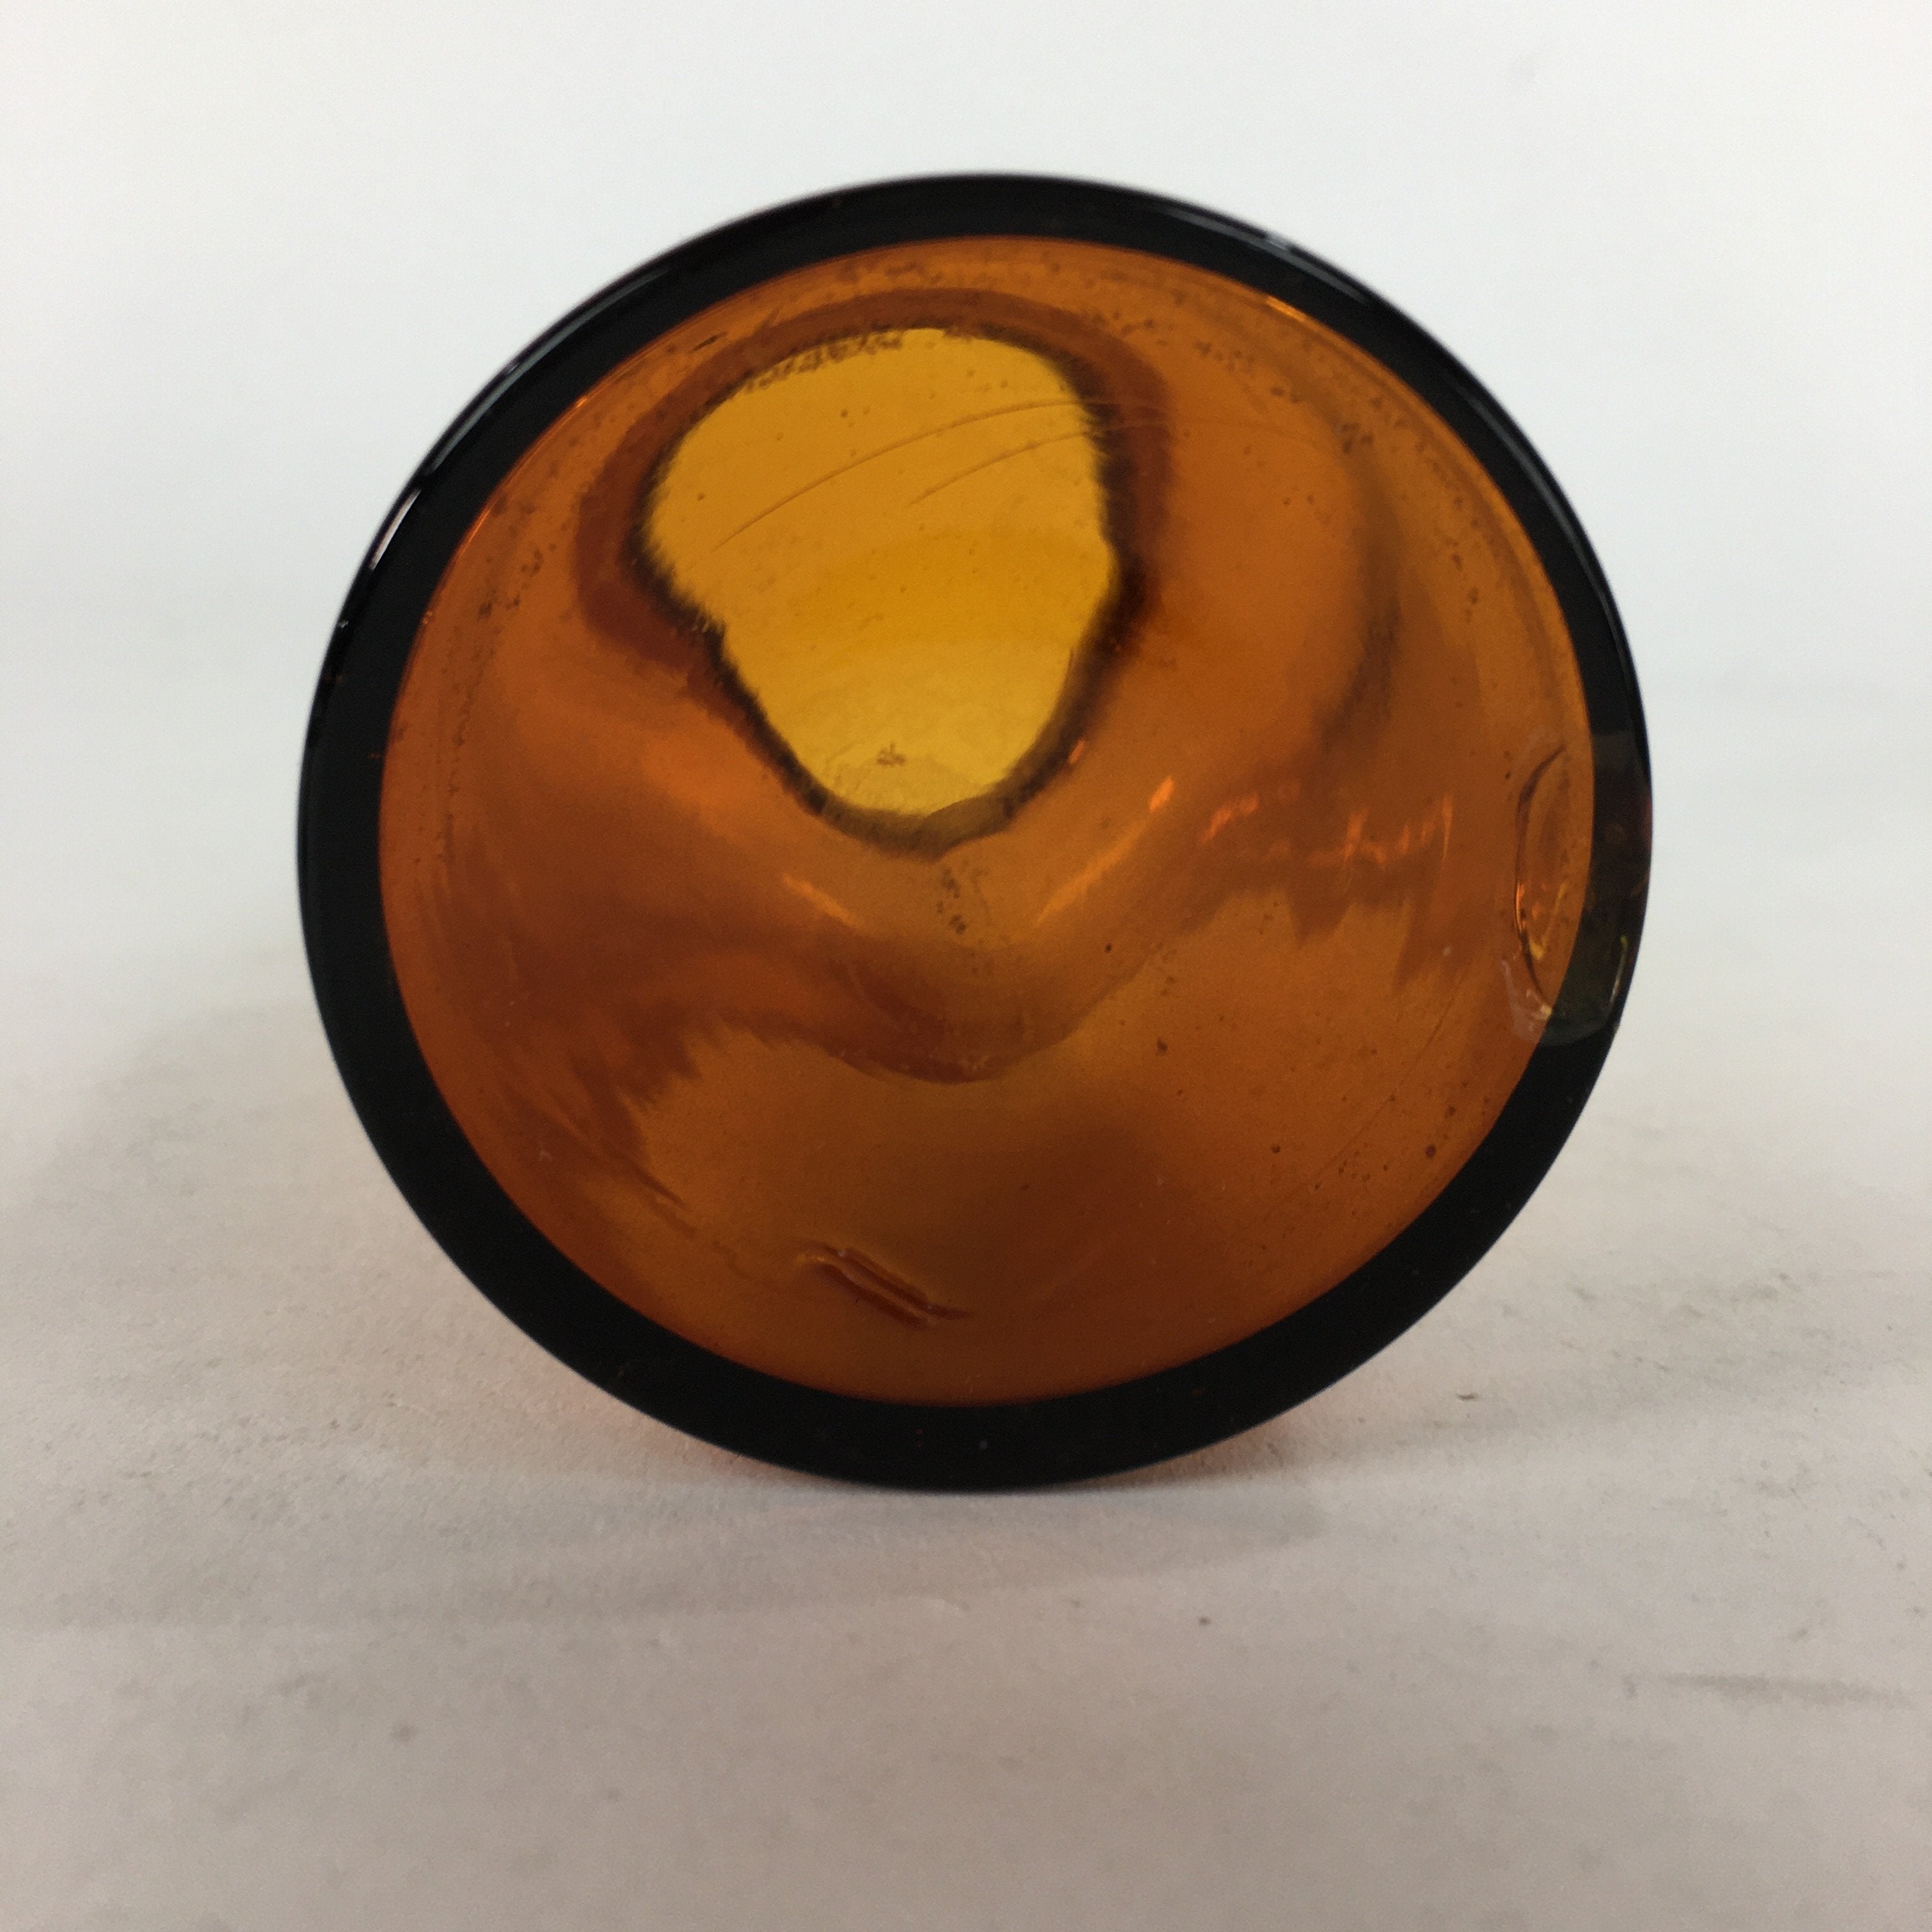 Japanese Lidded Glass Medicine Bottle Vtg Amber Color Glass 11 cm Vase MB6